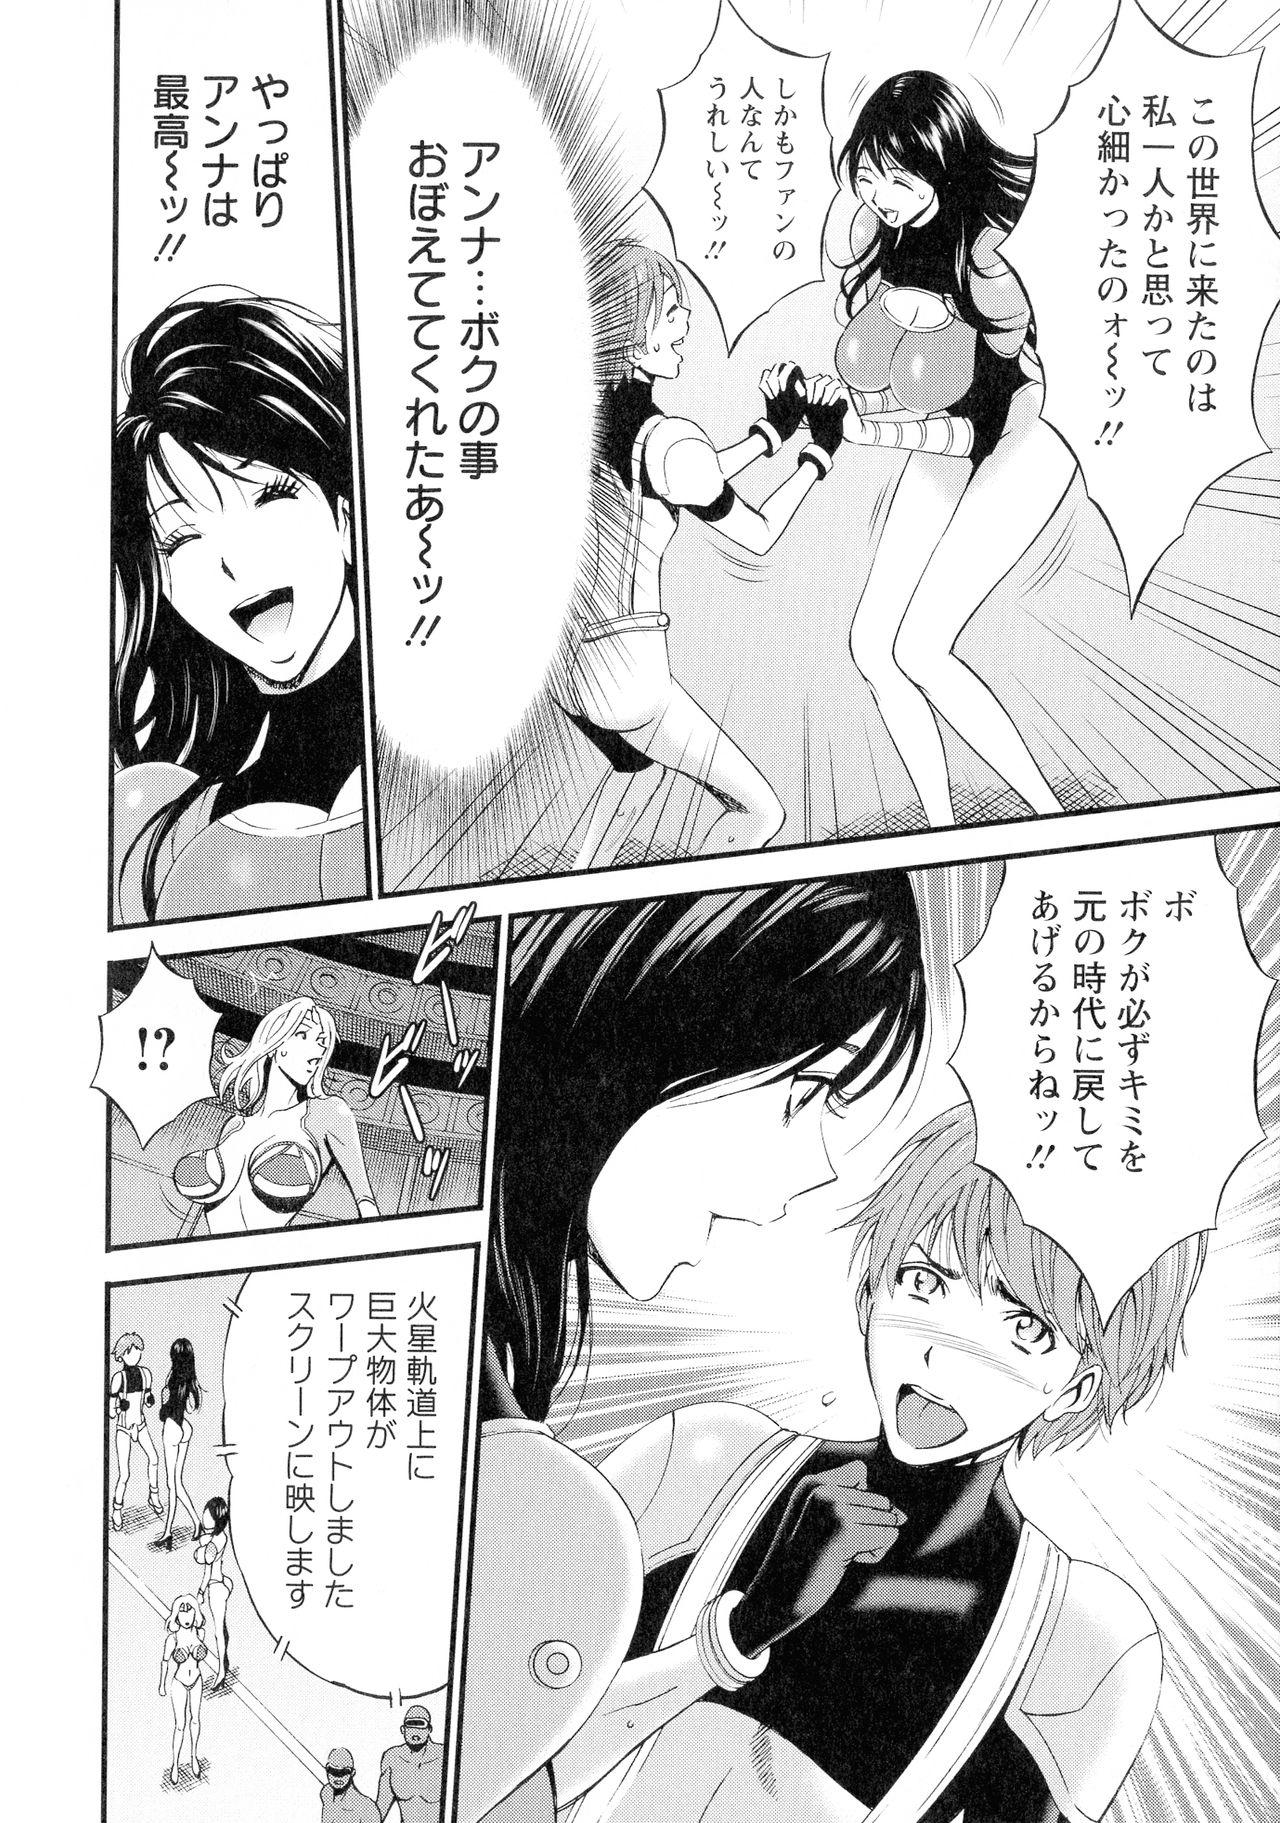 [Nakashima Chosuke] Seireki 2200-nen no Ota 3 Zetchou Time-Slip Girl 114